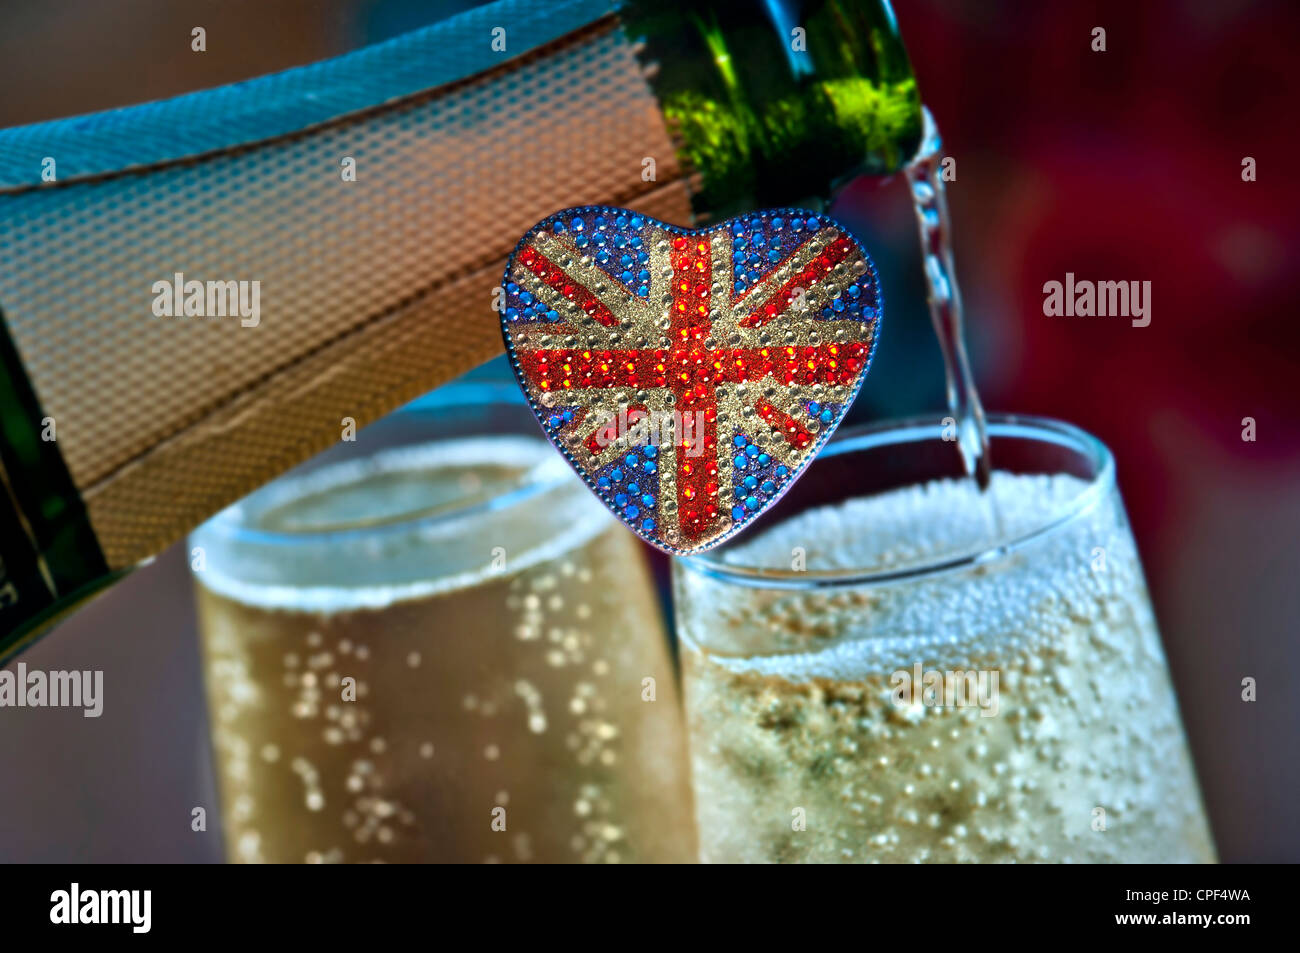 VINO ESPUMOSO BRITÁNICO con motivo de bandera Union Jack en forma de corazón con botella de vino espumoso británico inglés detrás del Reino Unido Foto de stock